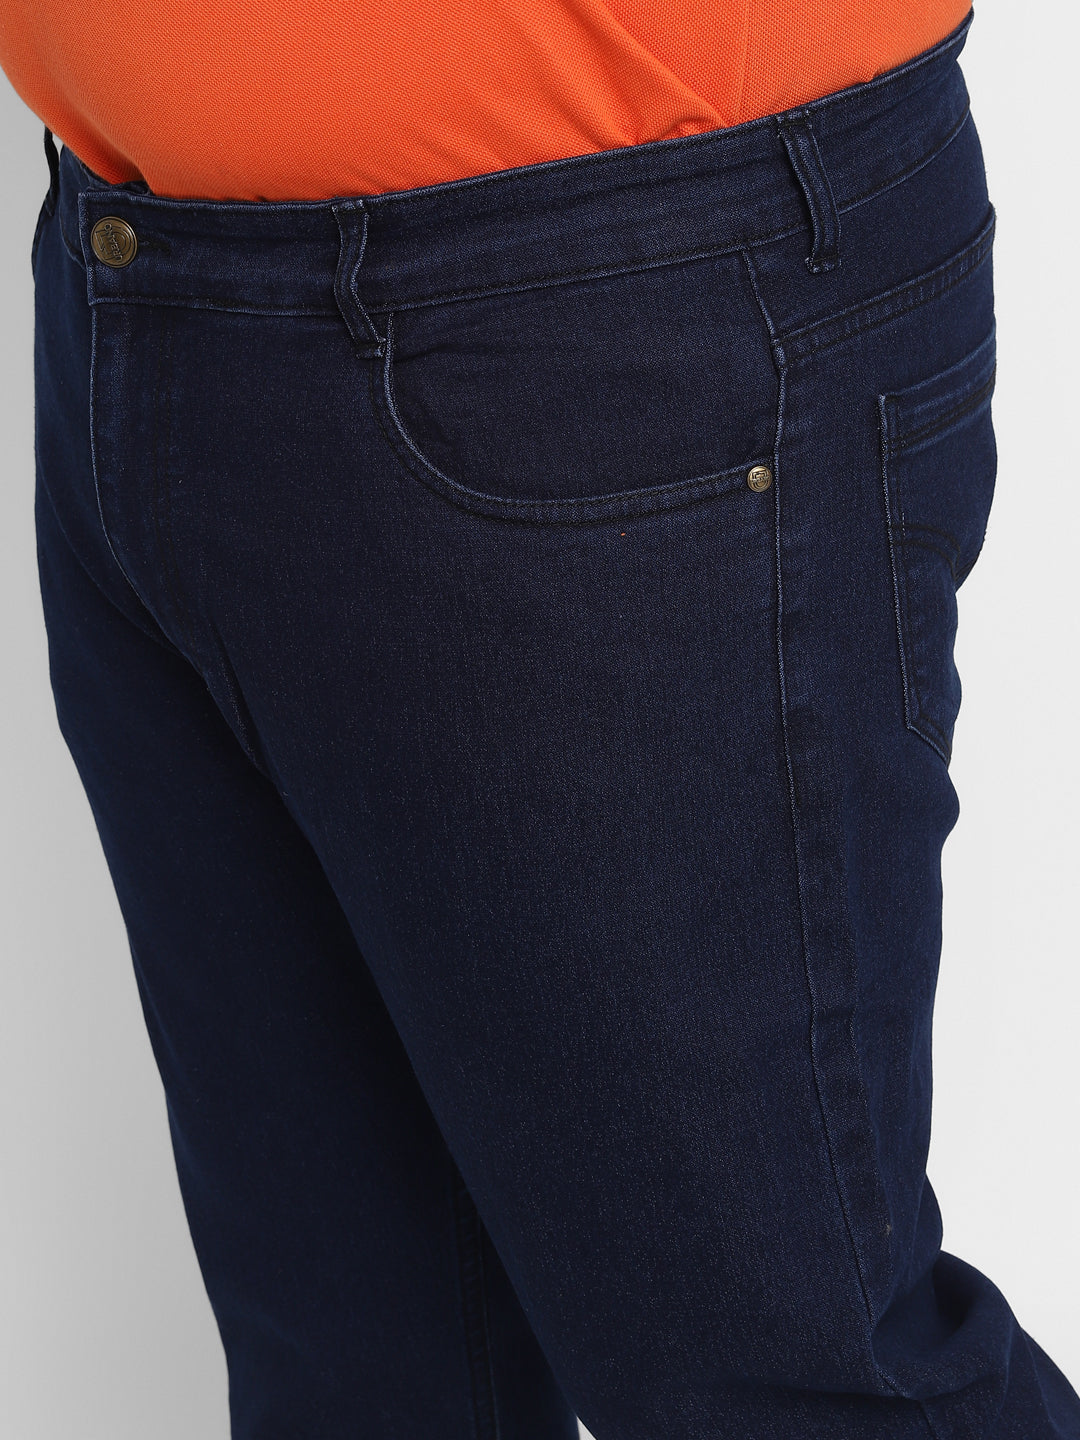 Men's Blue Regular Fit Denim Jeans Stretchable